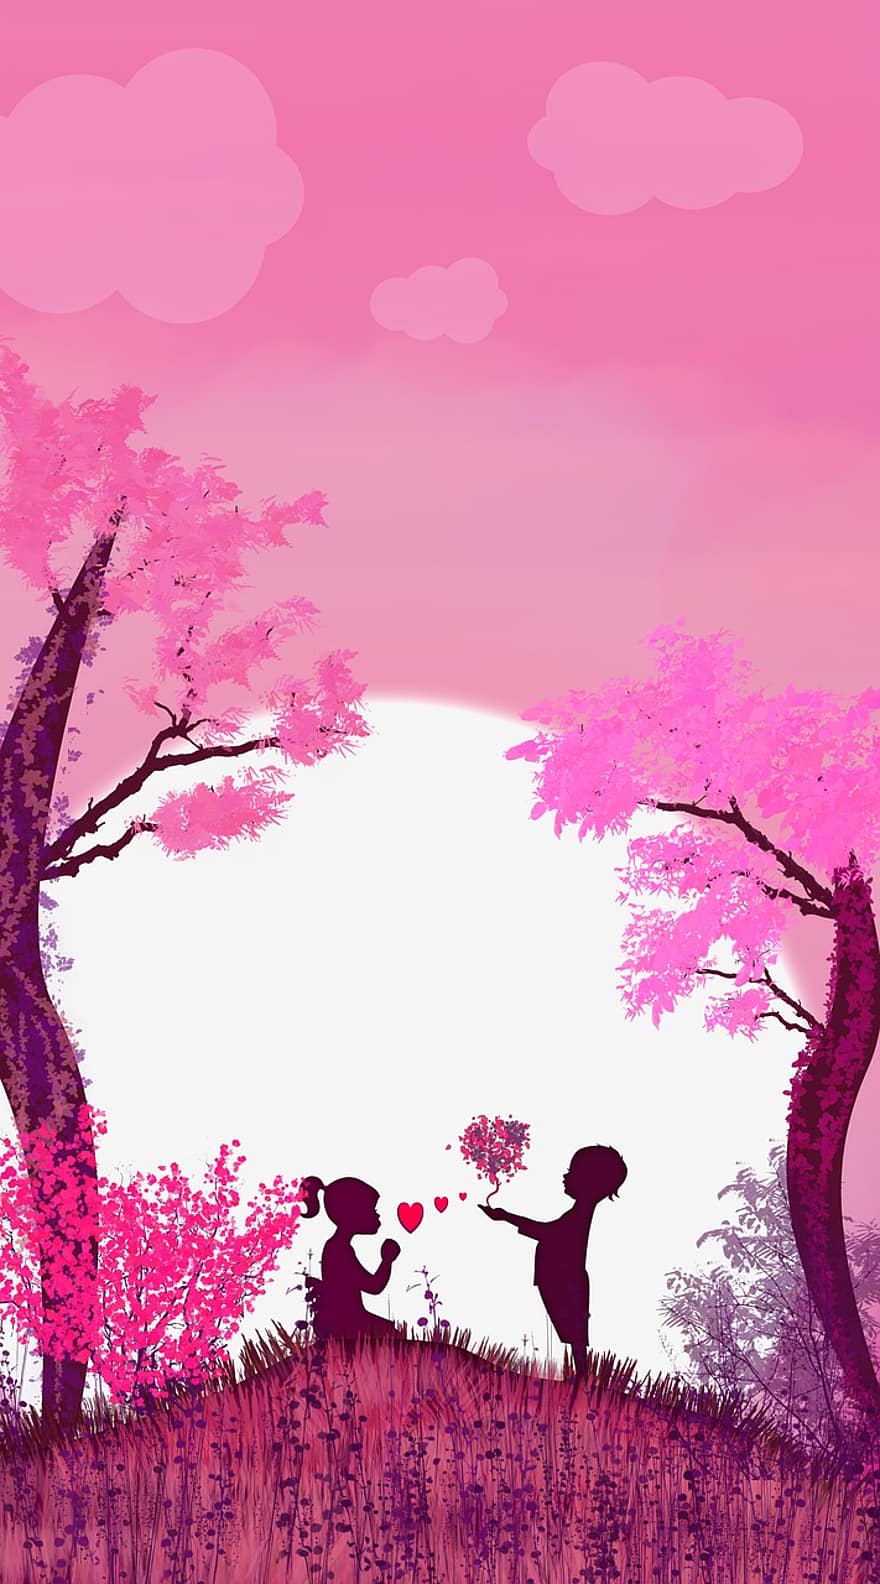 amor, casal, fundo rosa, romance, árvore, vetor, ilustração, por do sol, panorama, origens, silhueta